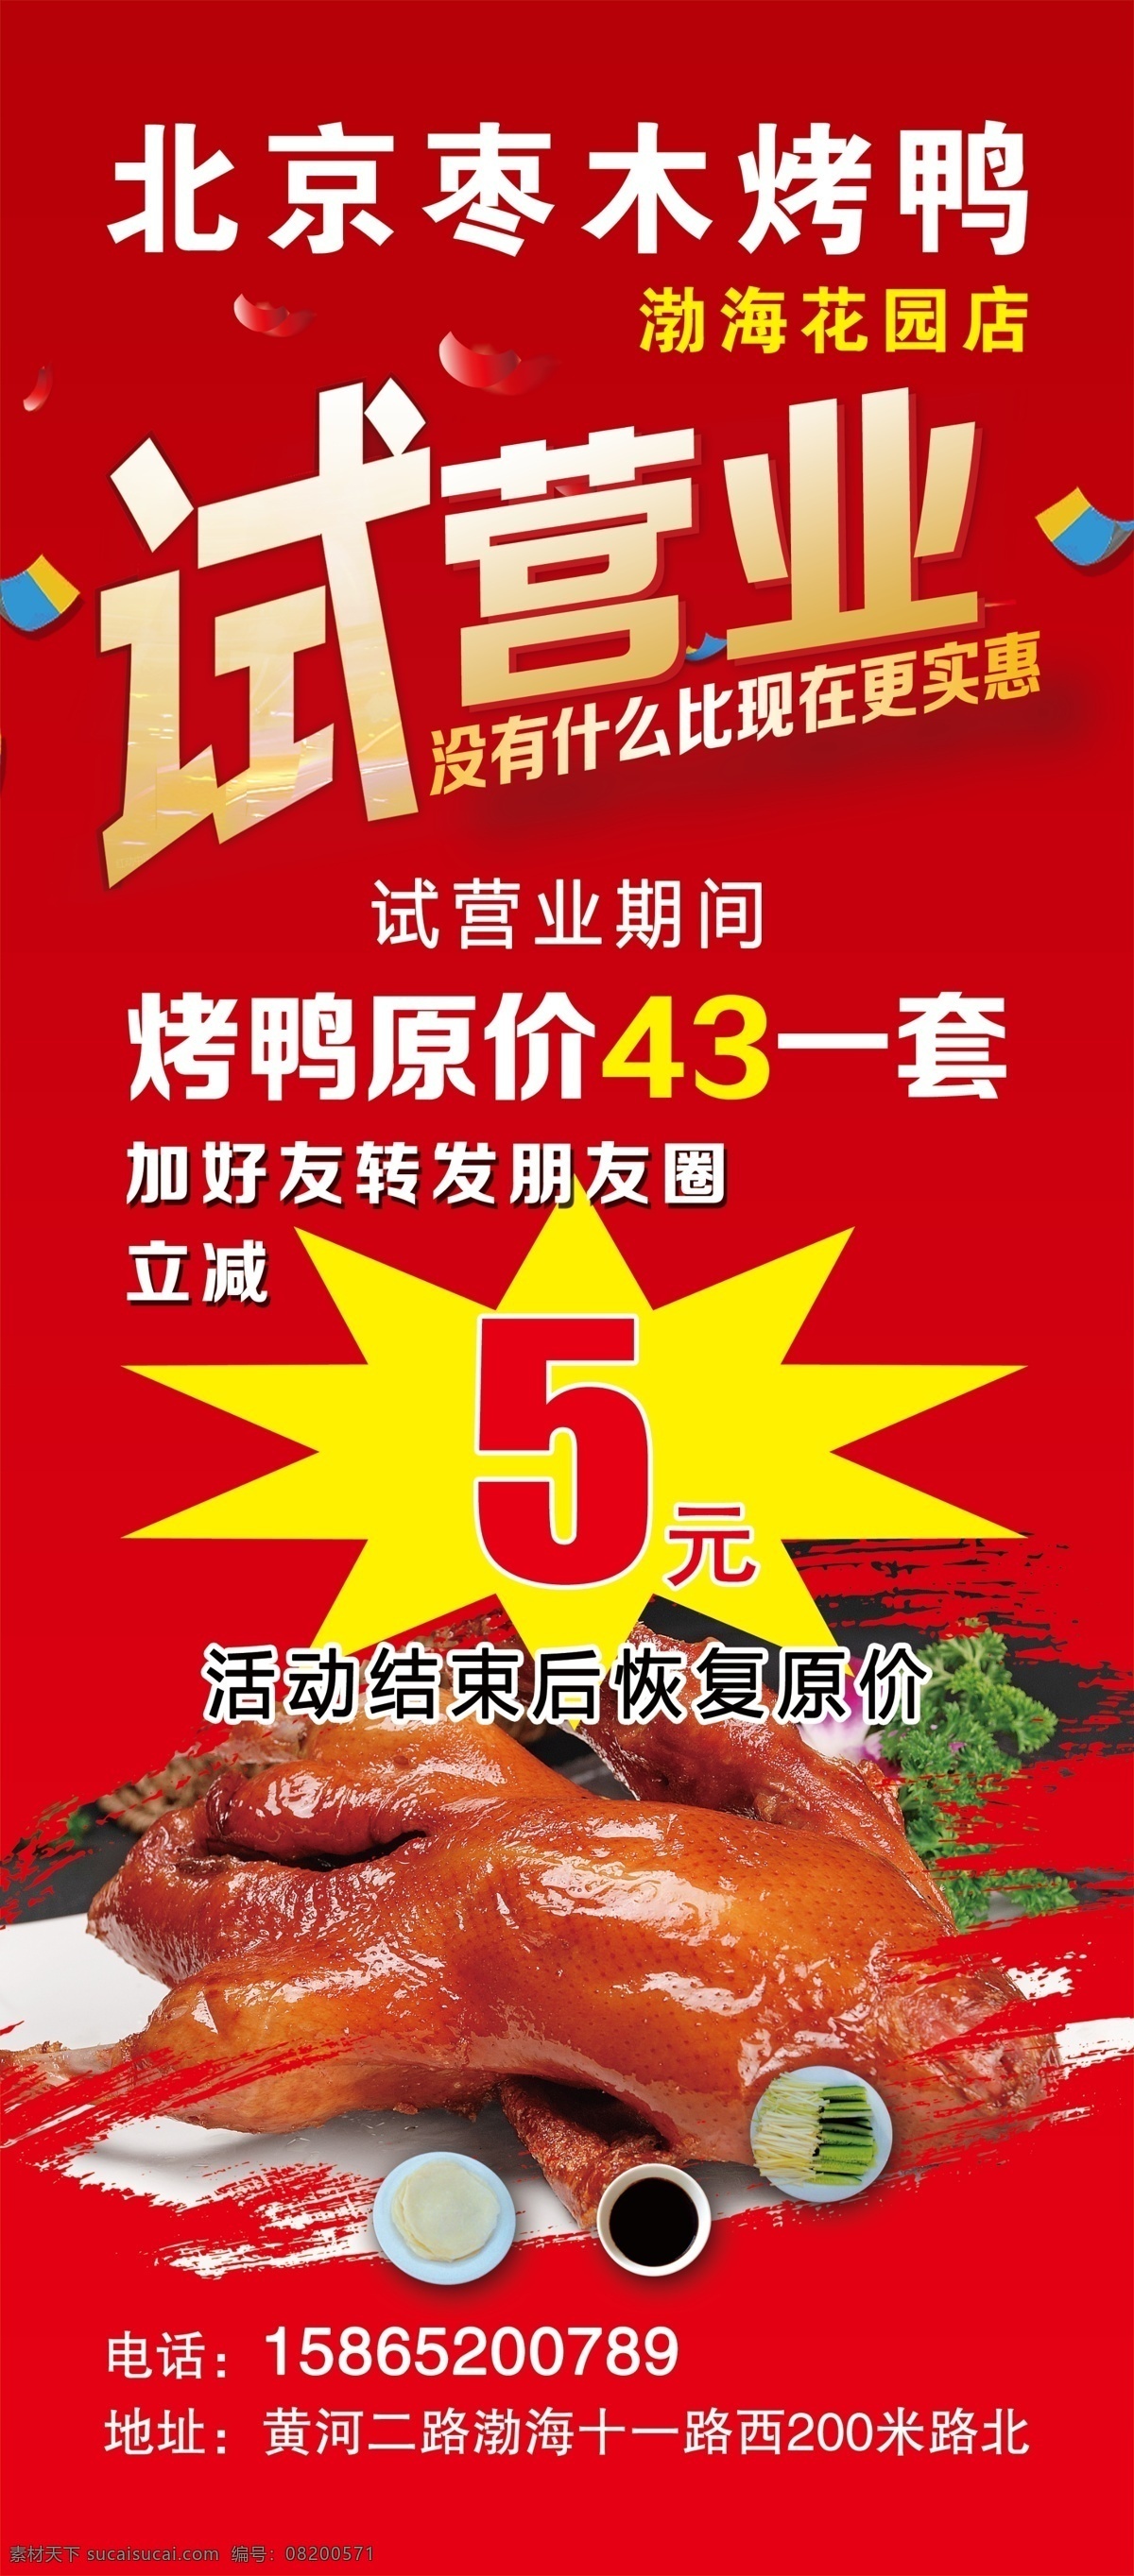 烤鸭 试营业 展架 北京 枣木 室外广告设计